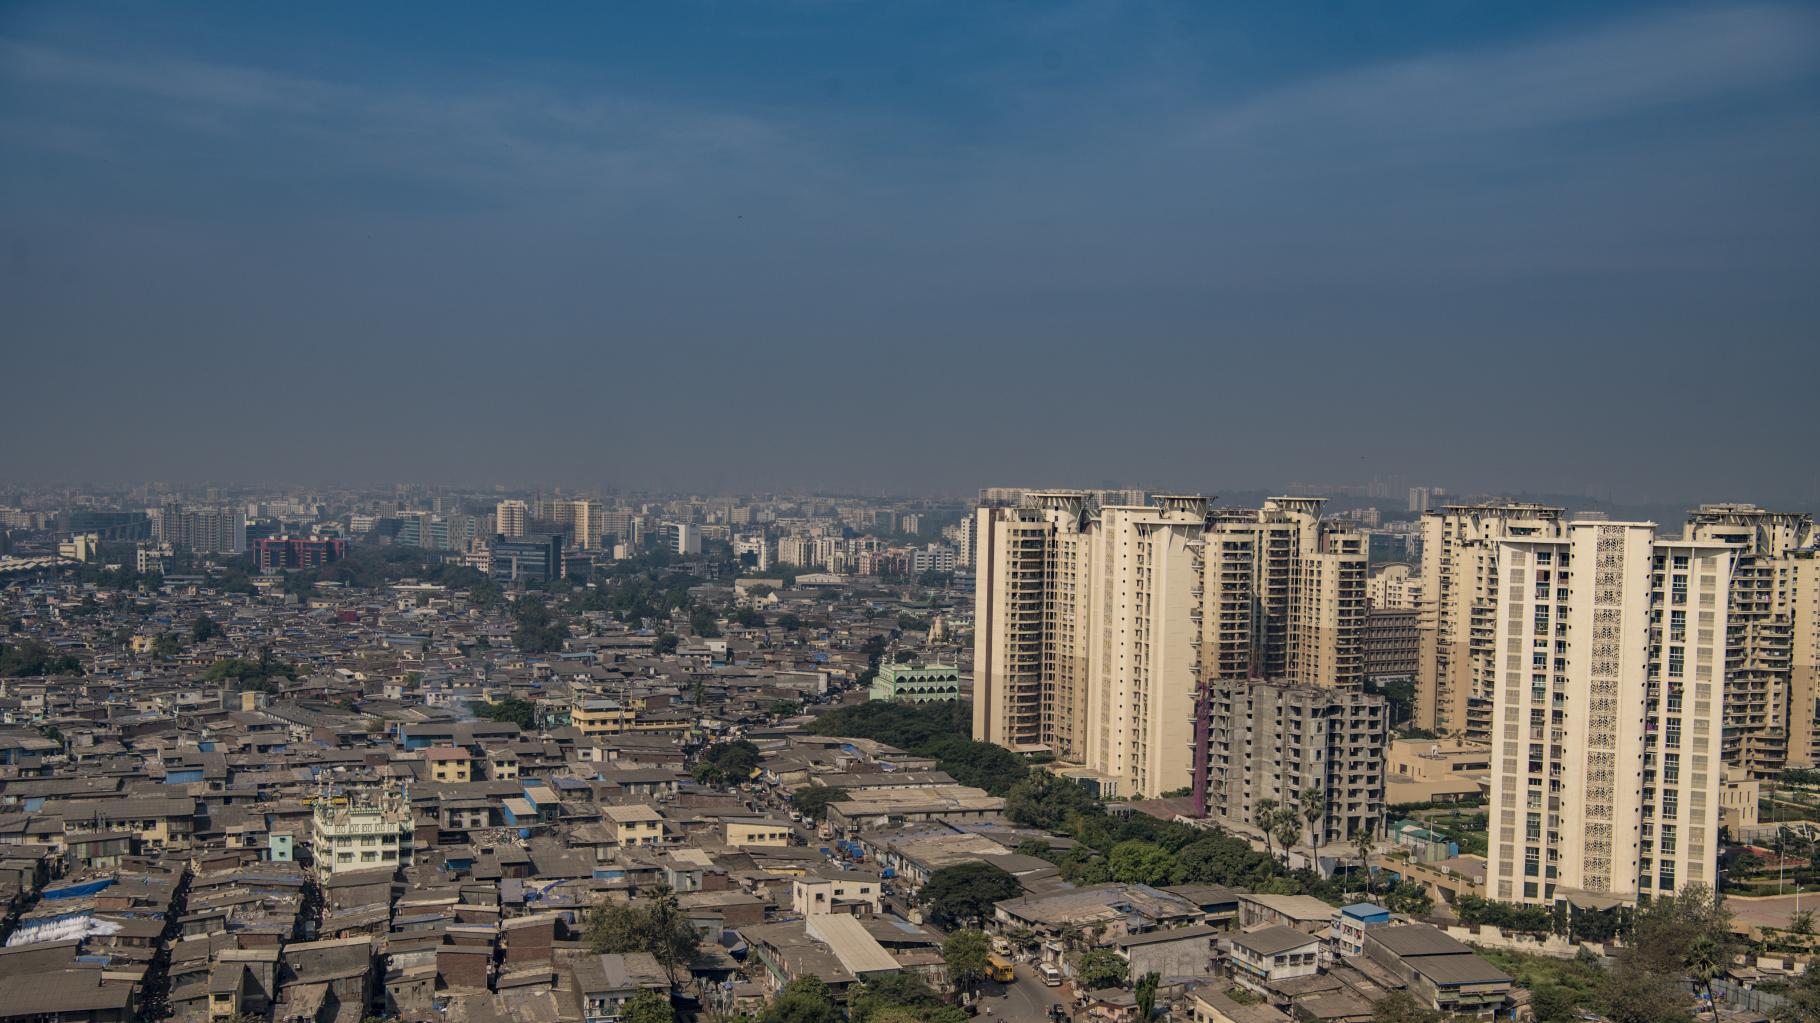 Slum neben Hochhäusern in Mumbai, Indien